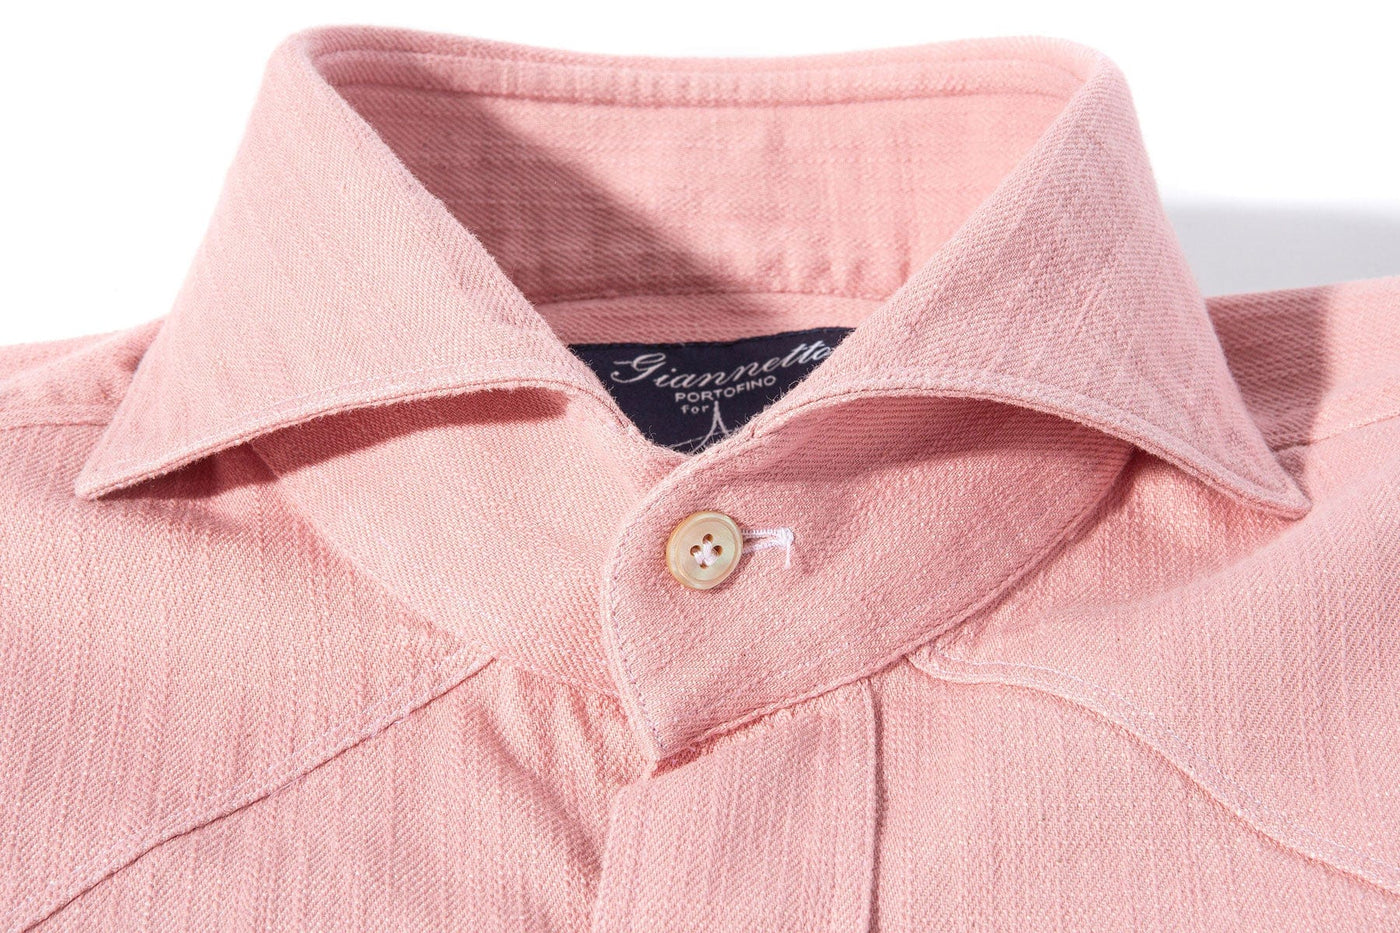 Lourmarin Denim Shirt in Pink - AXEL'S